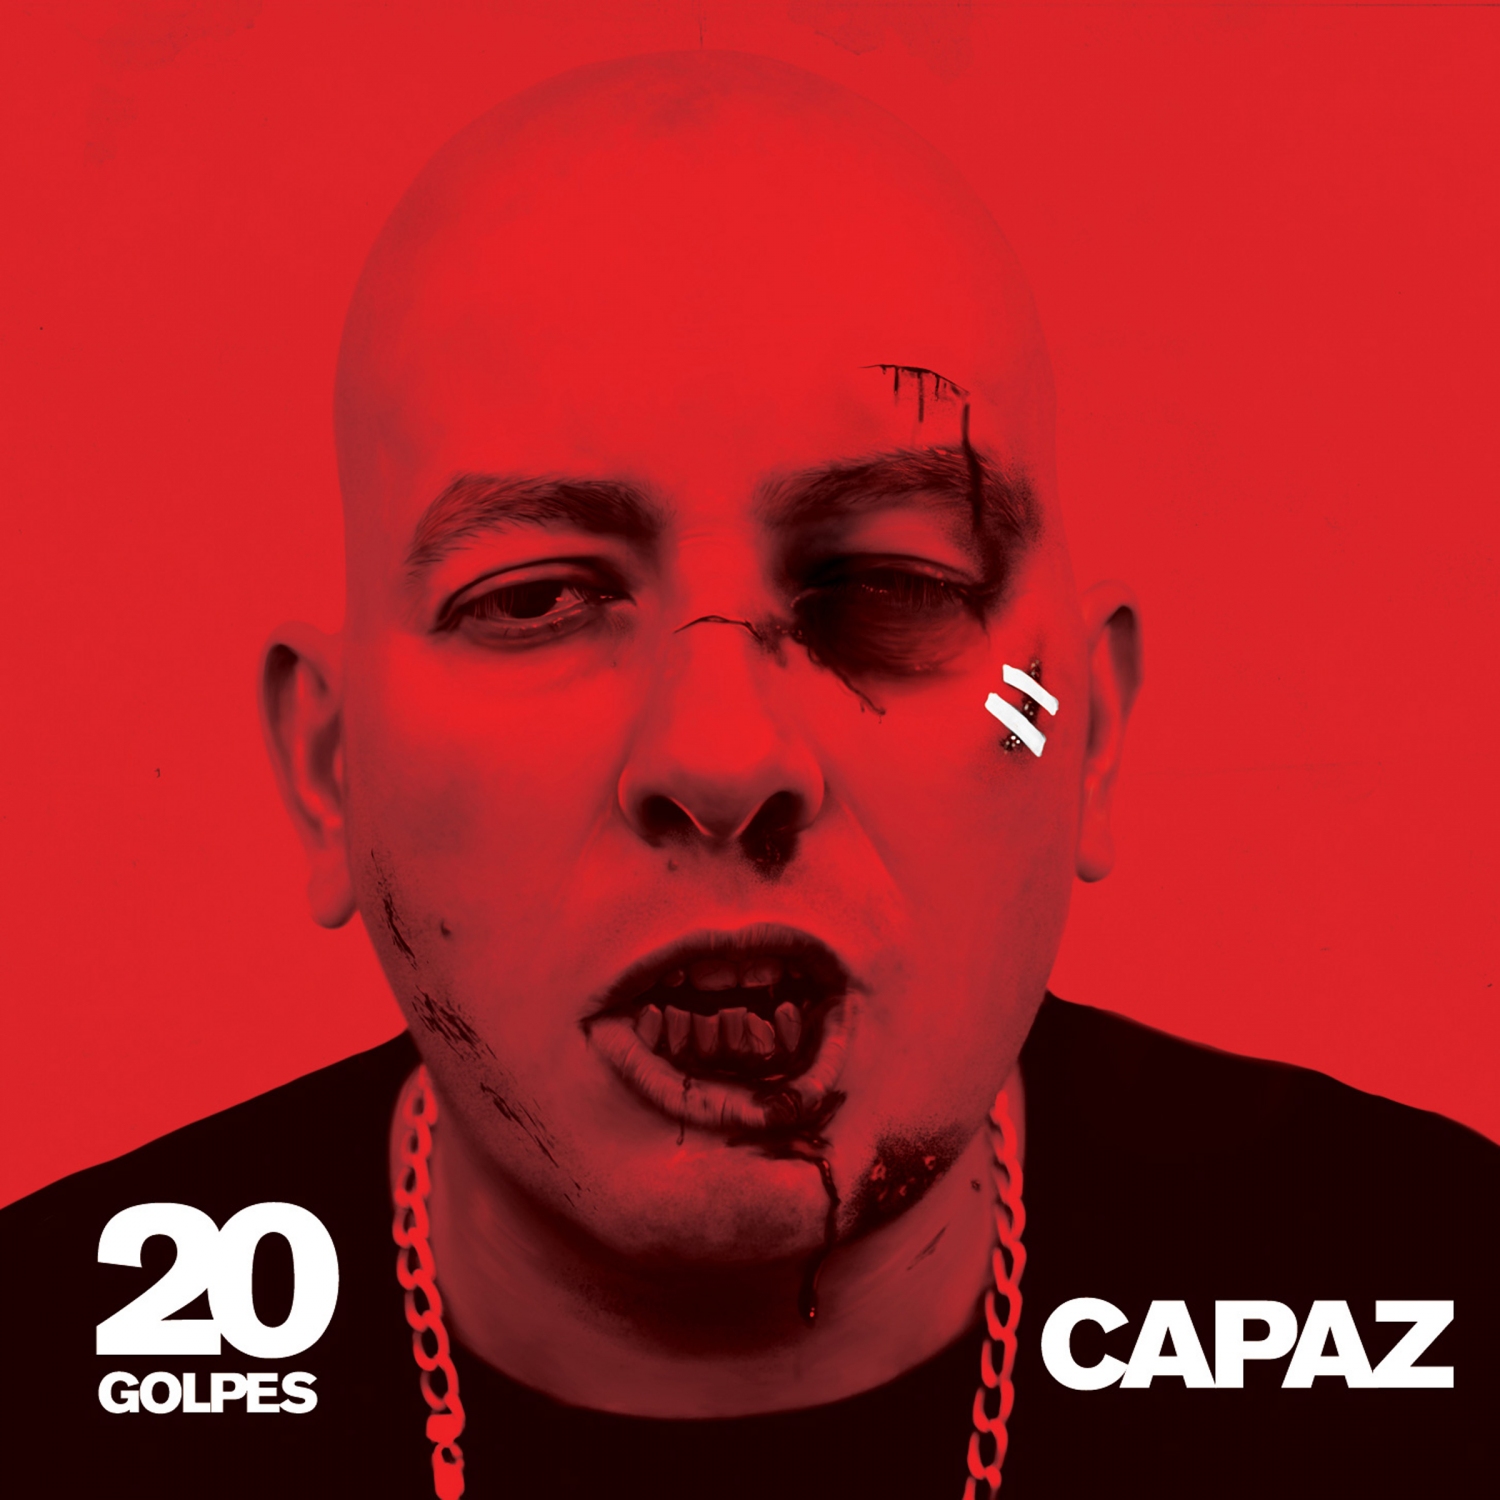 Capaz - 20 Golpes (Tracklist)